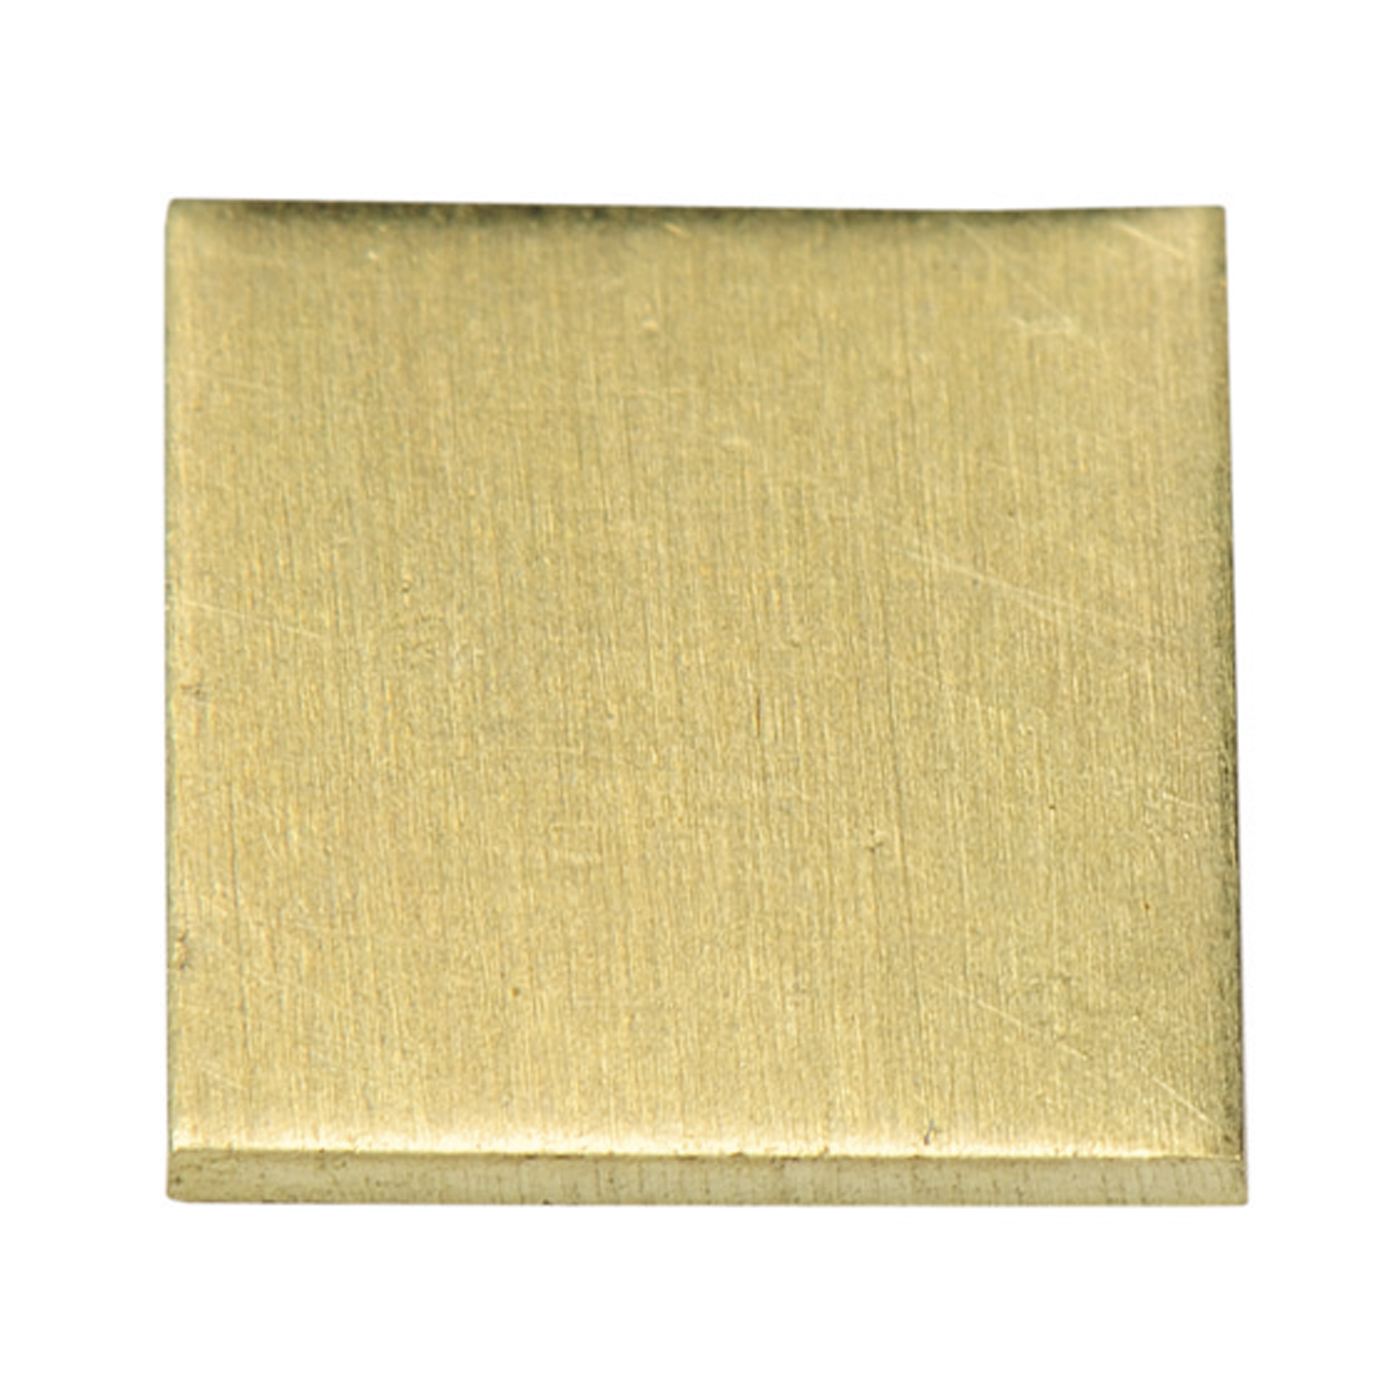 Gold-Kalibrierplättchen, 14 ct - 1 Stück